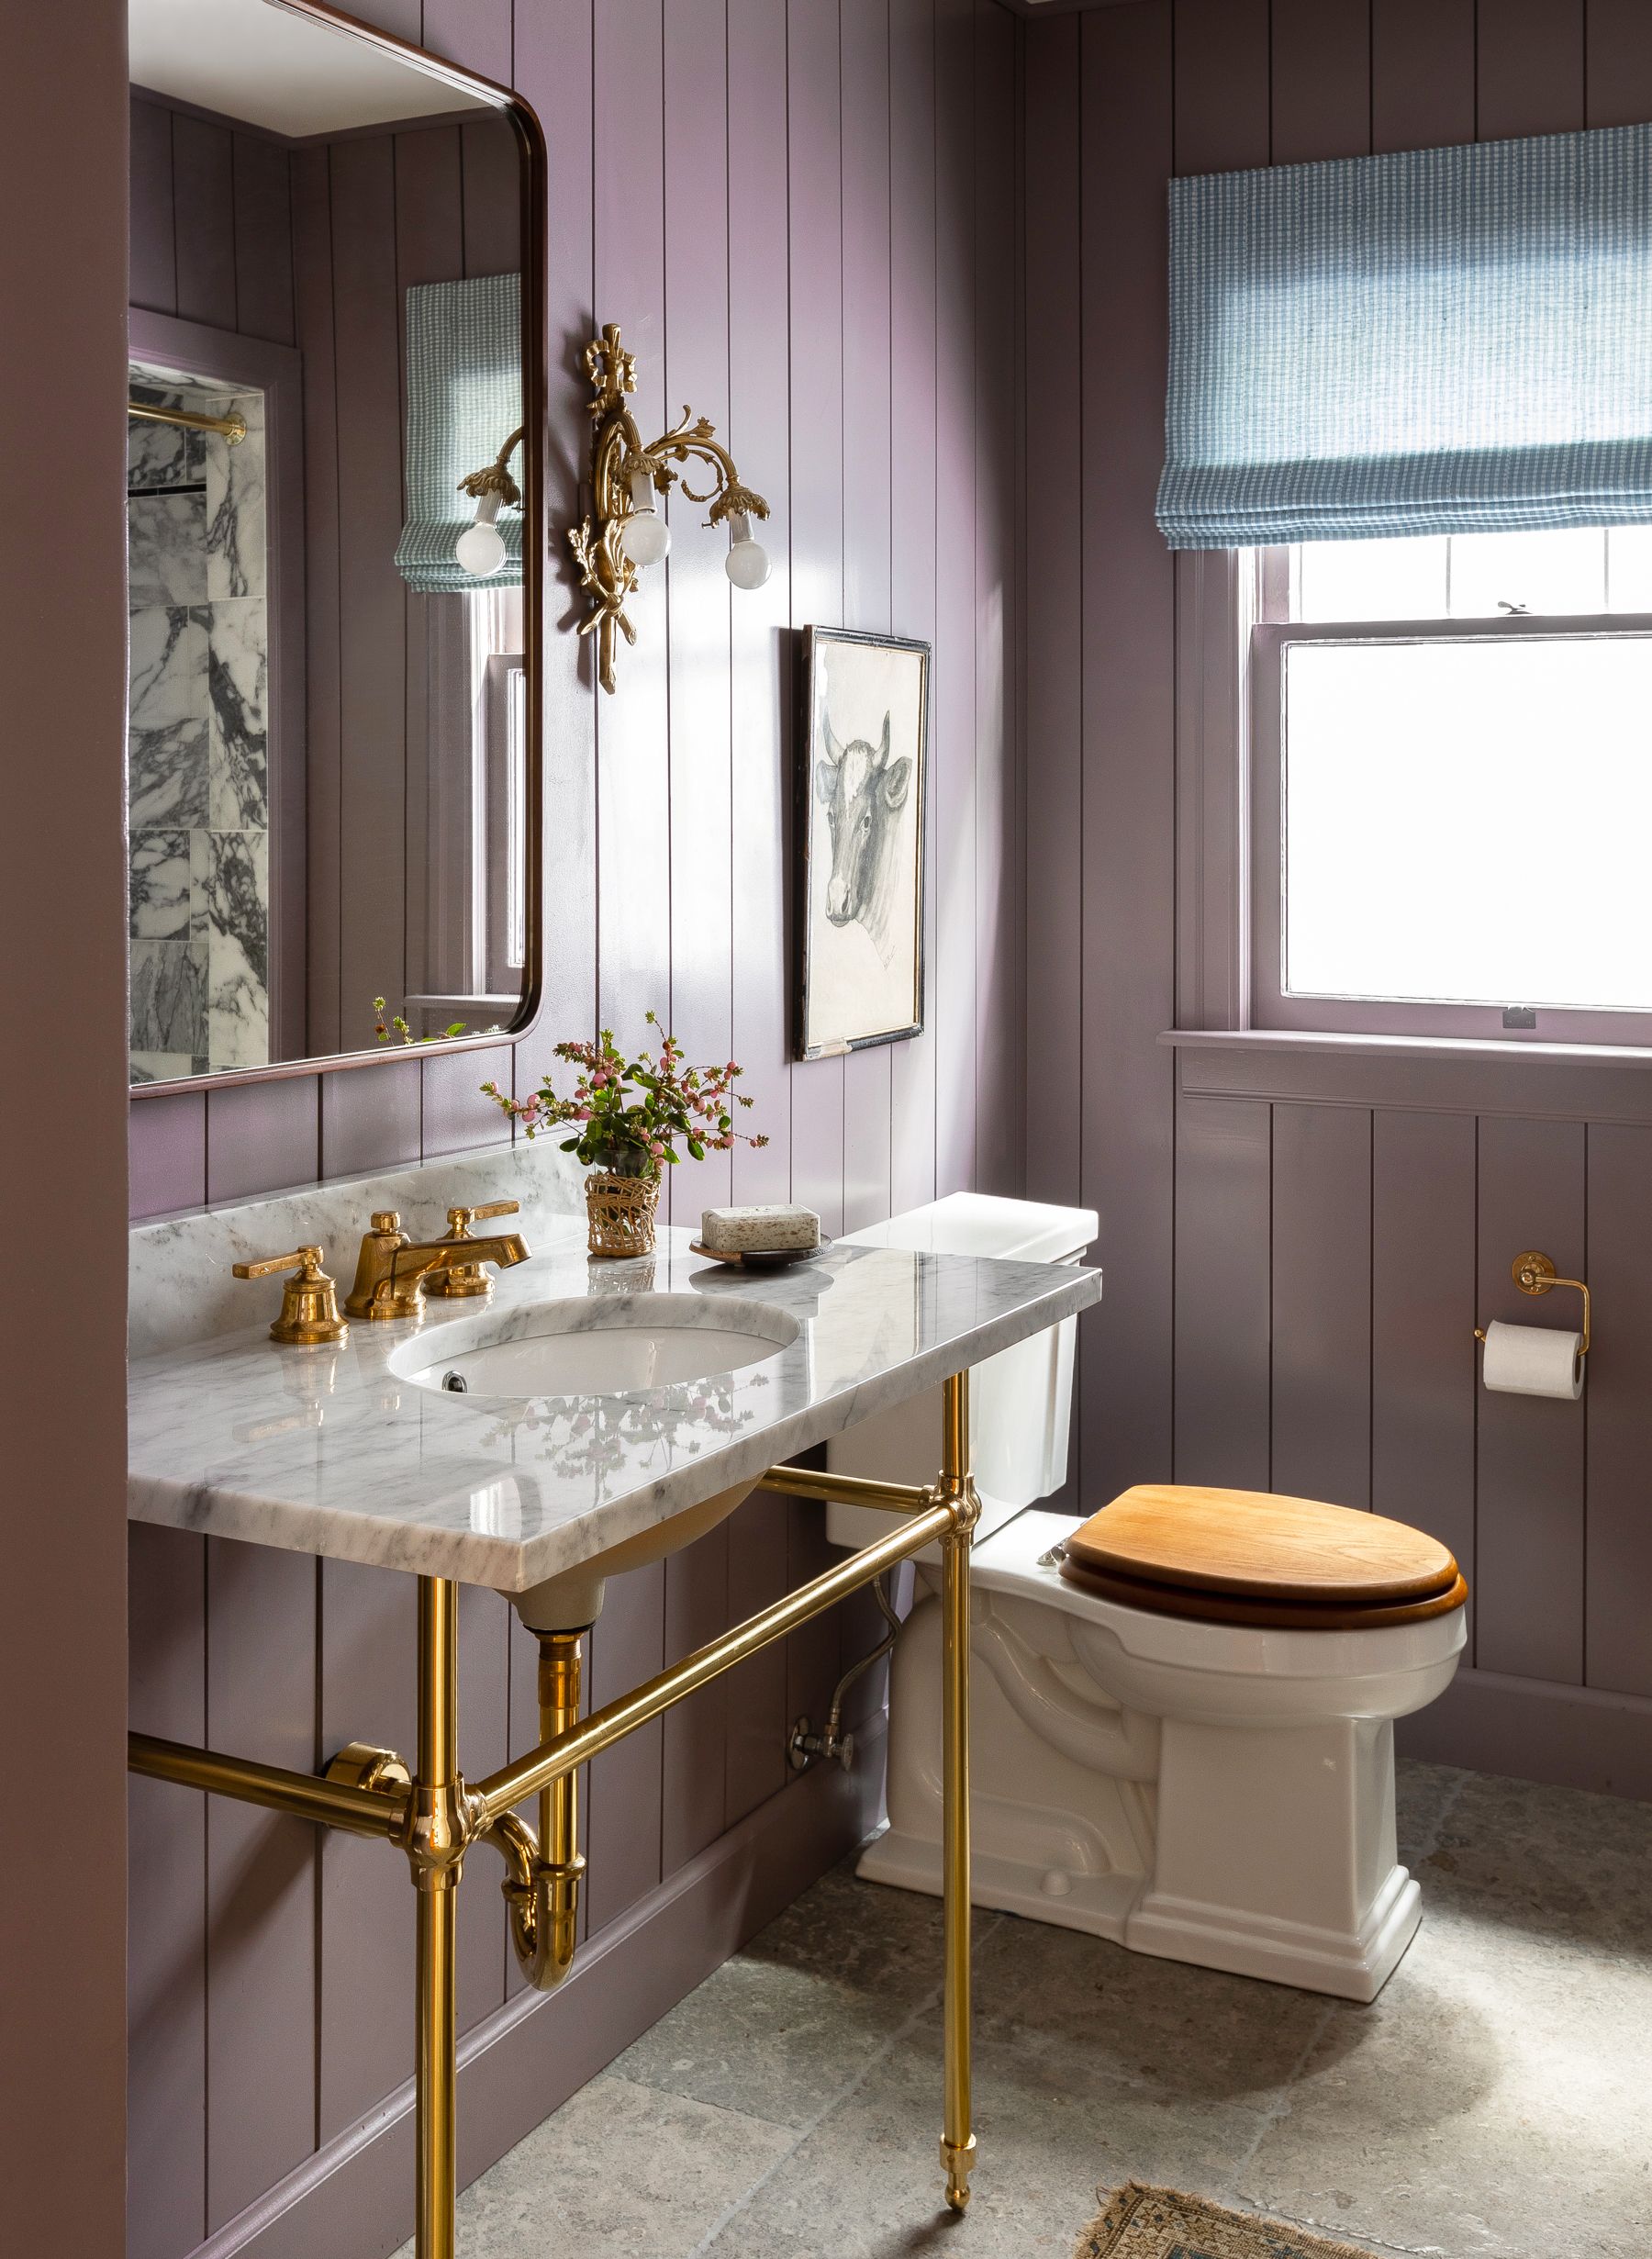 20 Best Farmhouse Bathroom Design Ideas Farmhouse Bathroom Decor